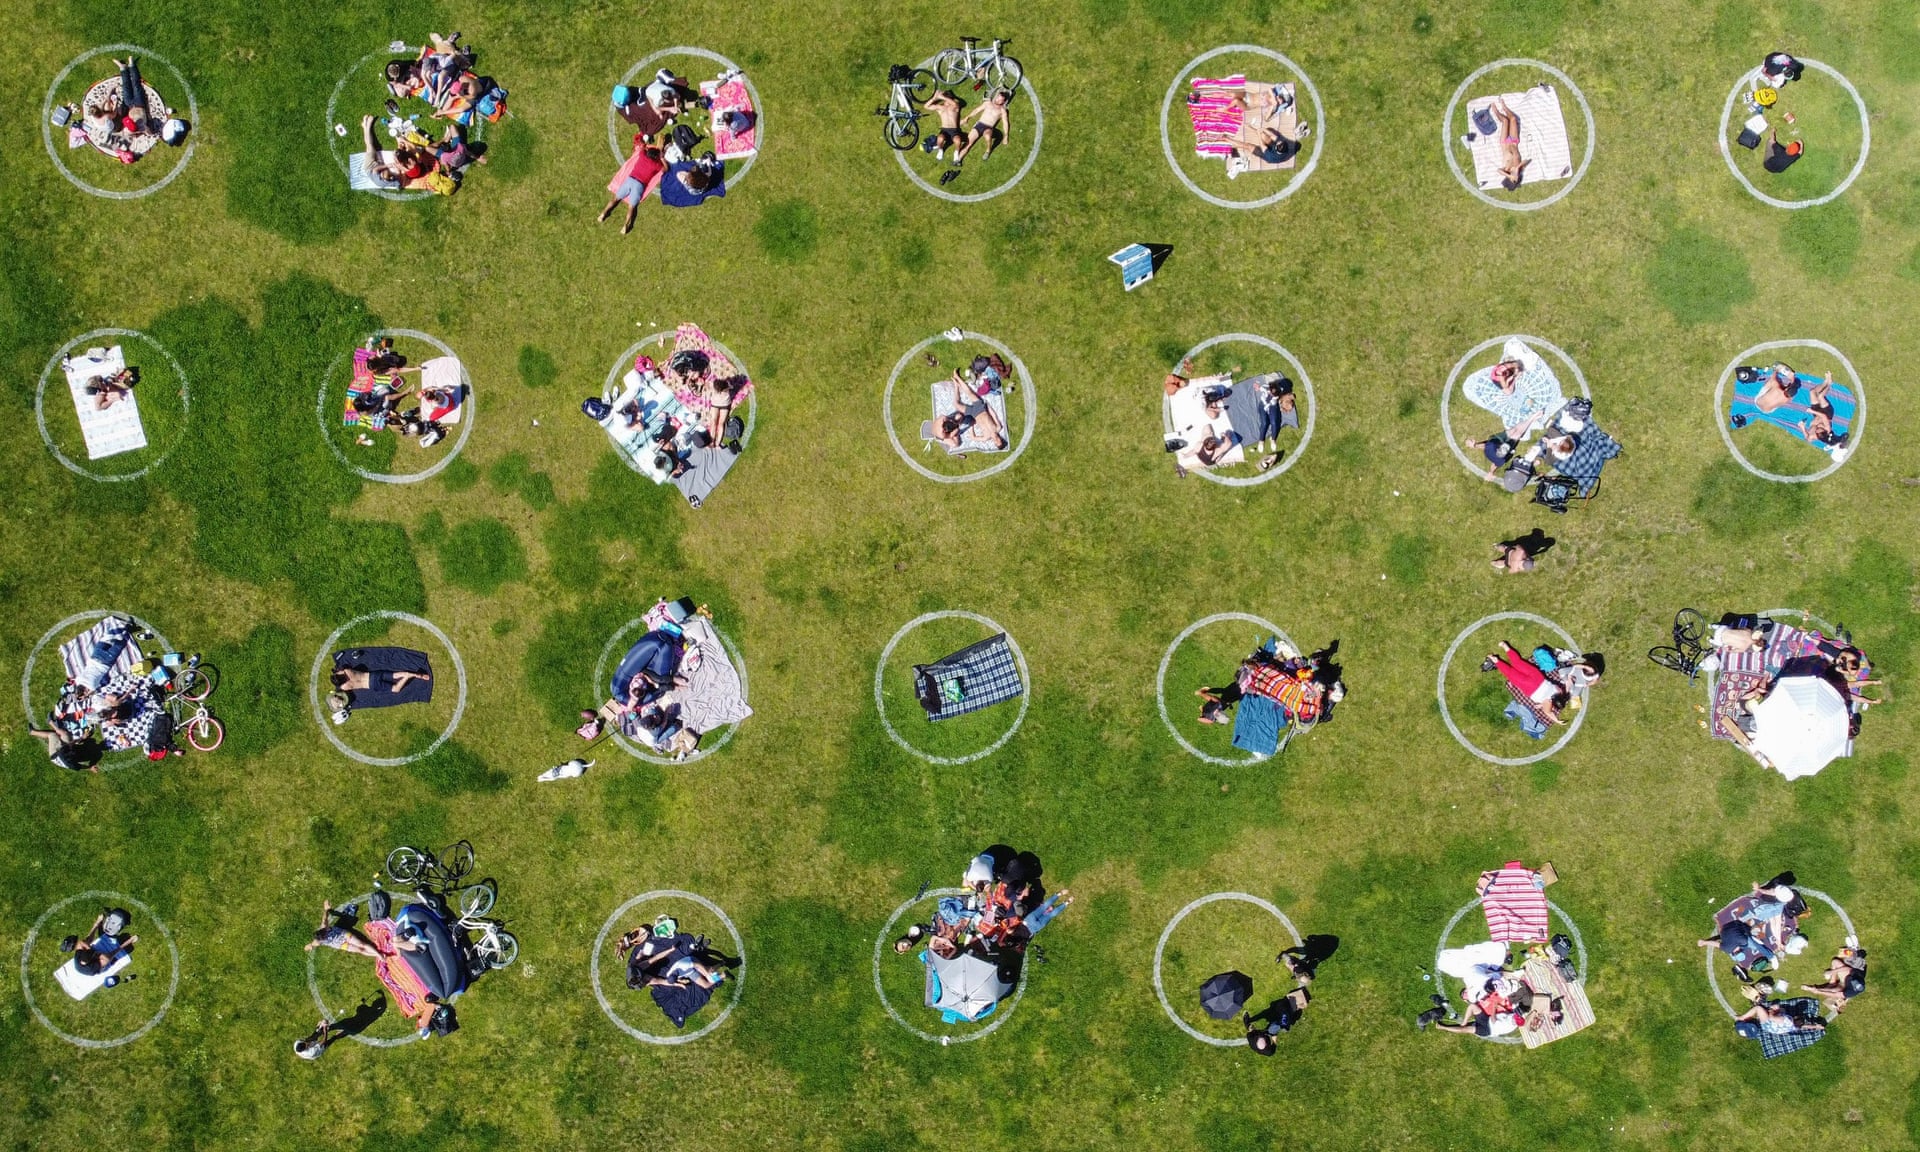 open air market designated circular seating zones